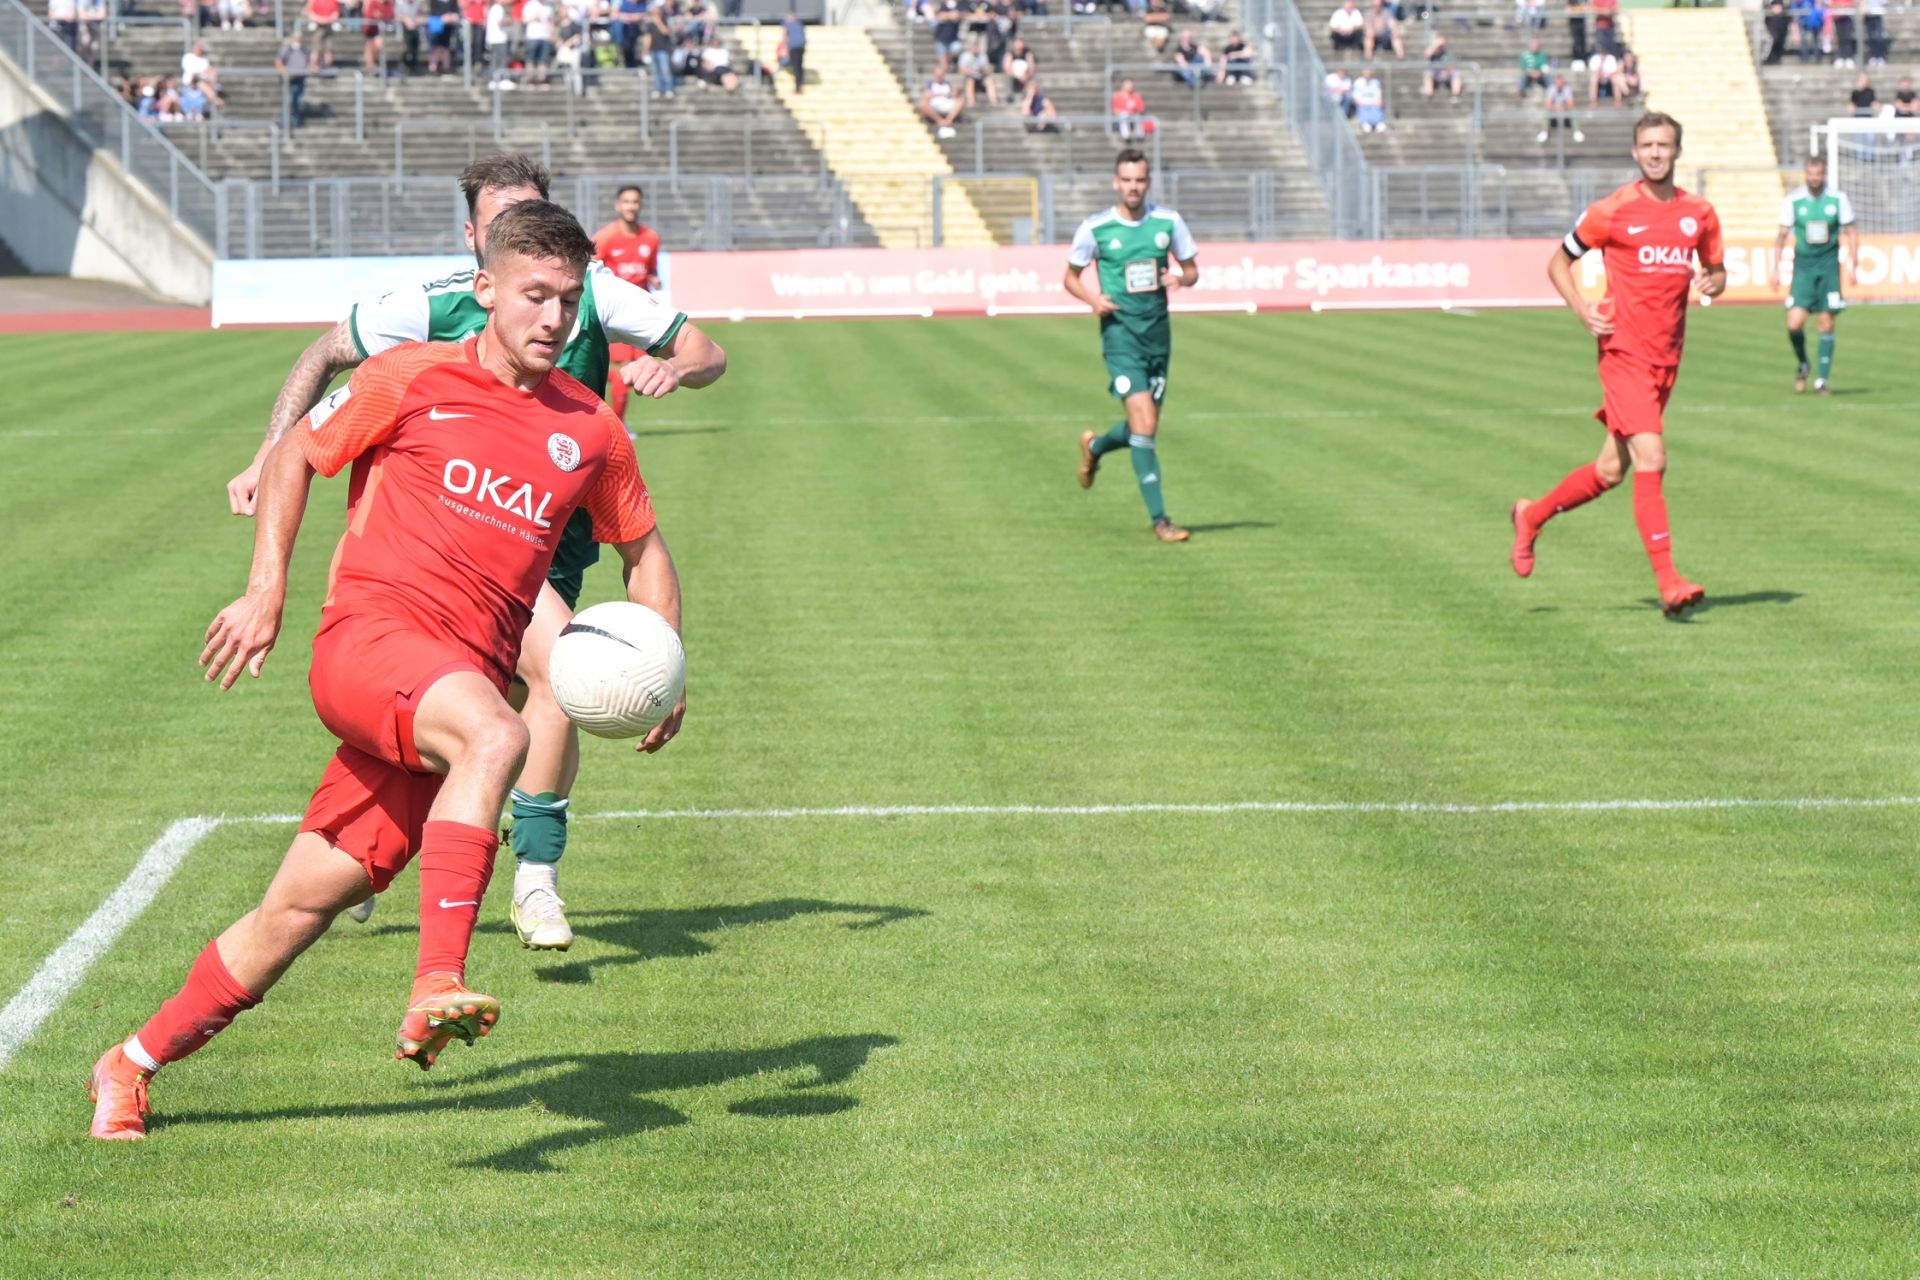 Regionalliga Südwest, Saison 2021/22, KSV Hessen Kassel, FC 08 Homburg, Endstand 3:0